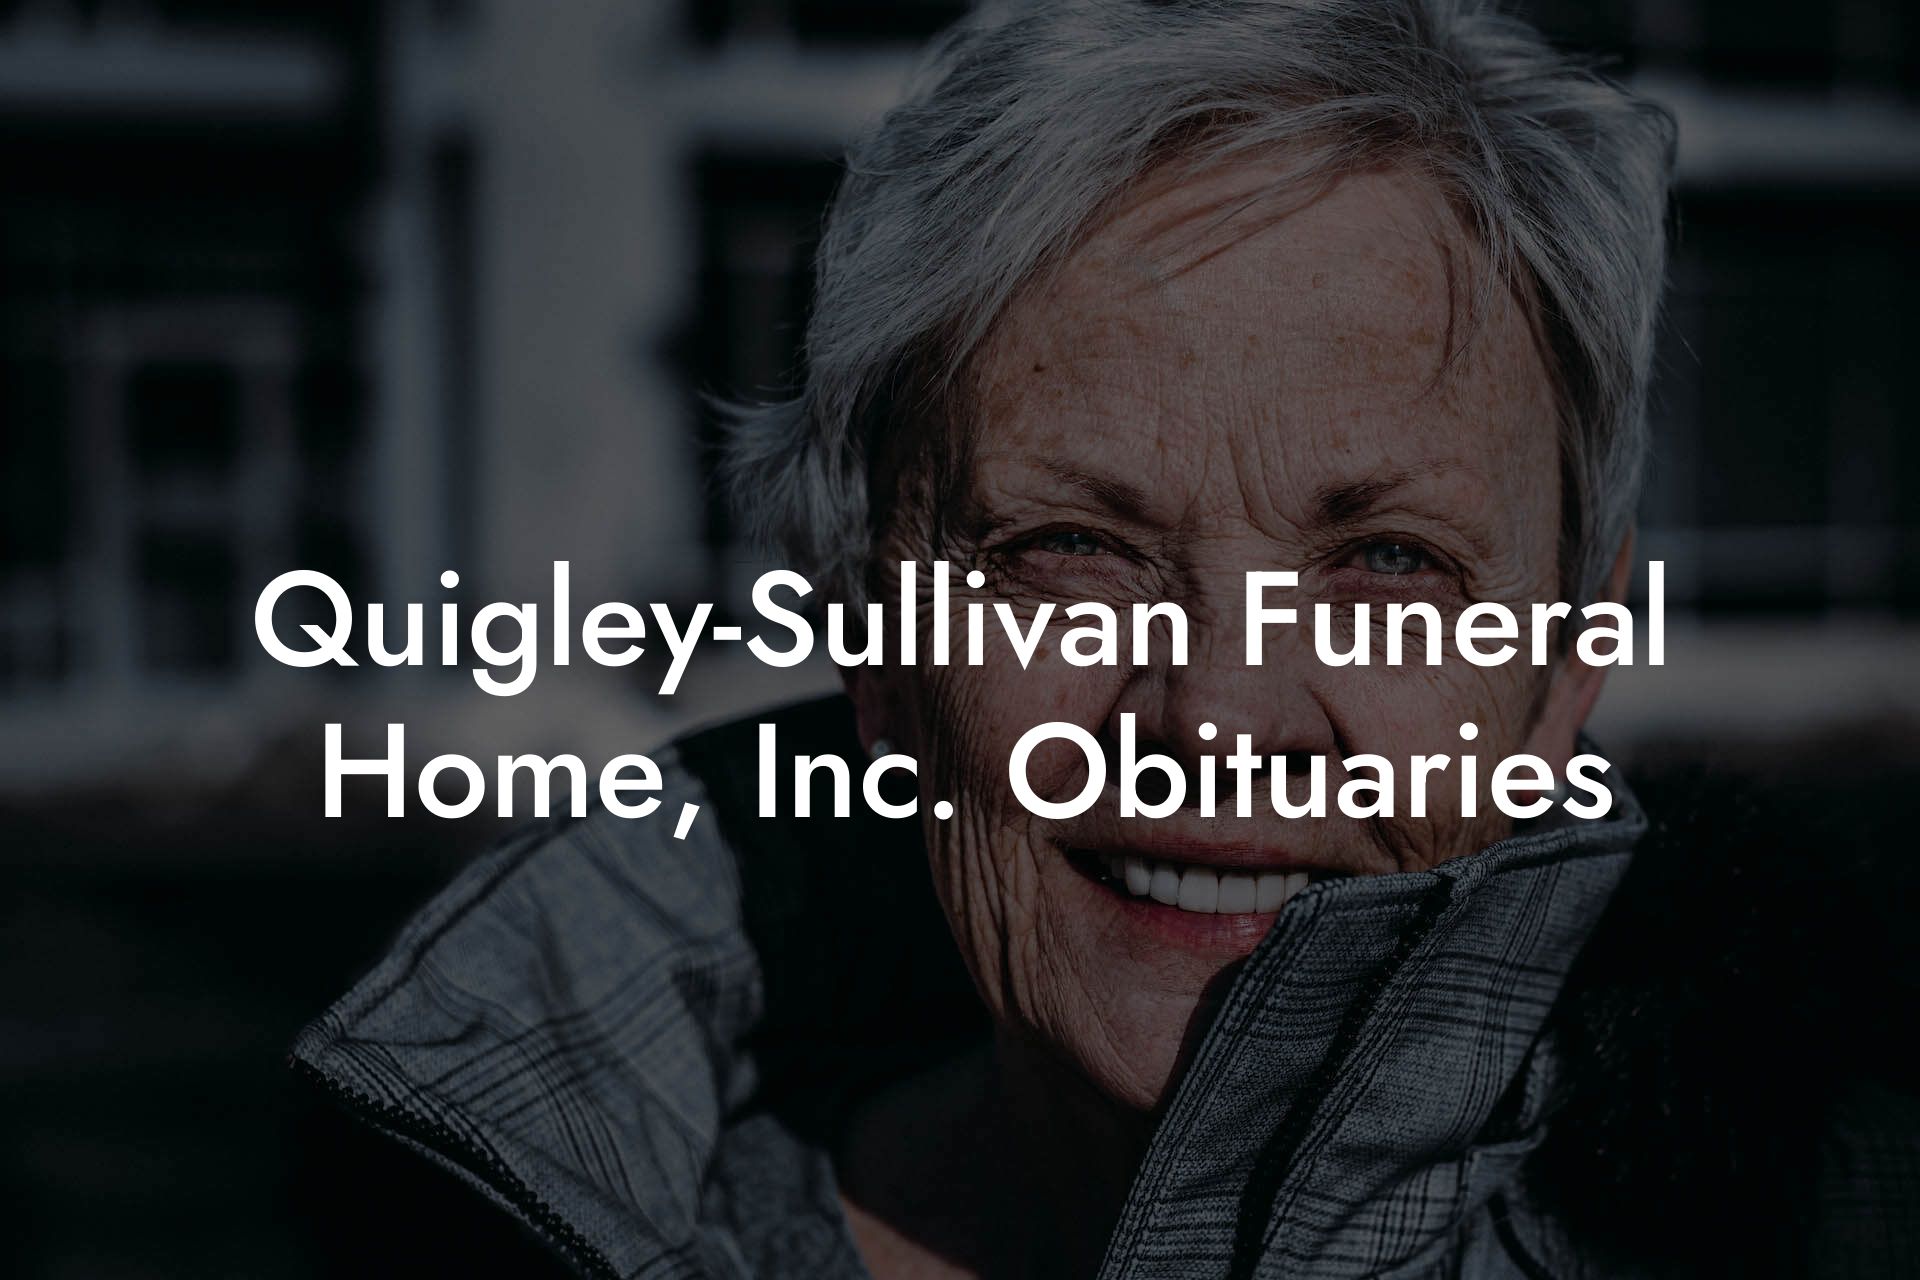 Quigley-Sullivan Funeral Home, Inc. Obituaries